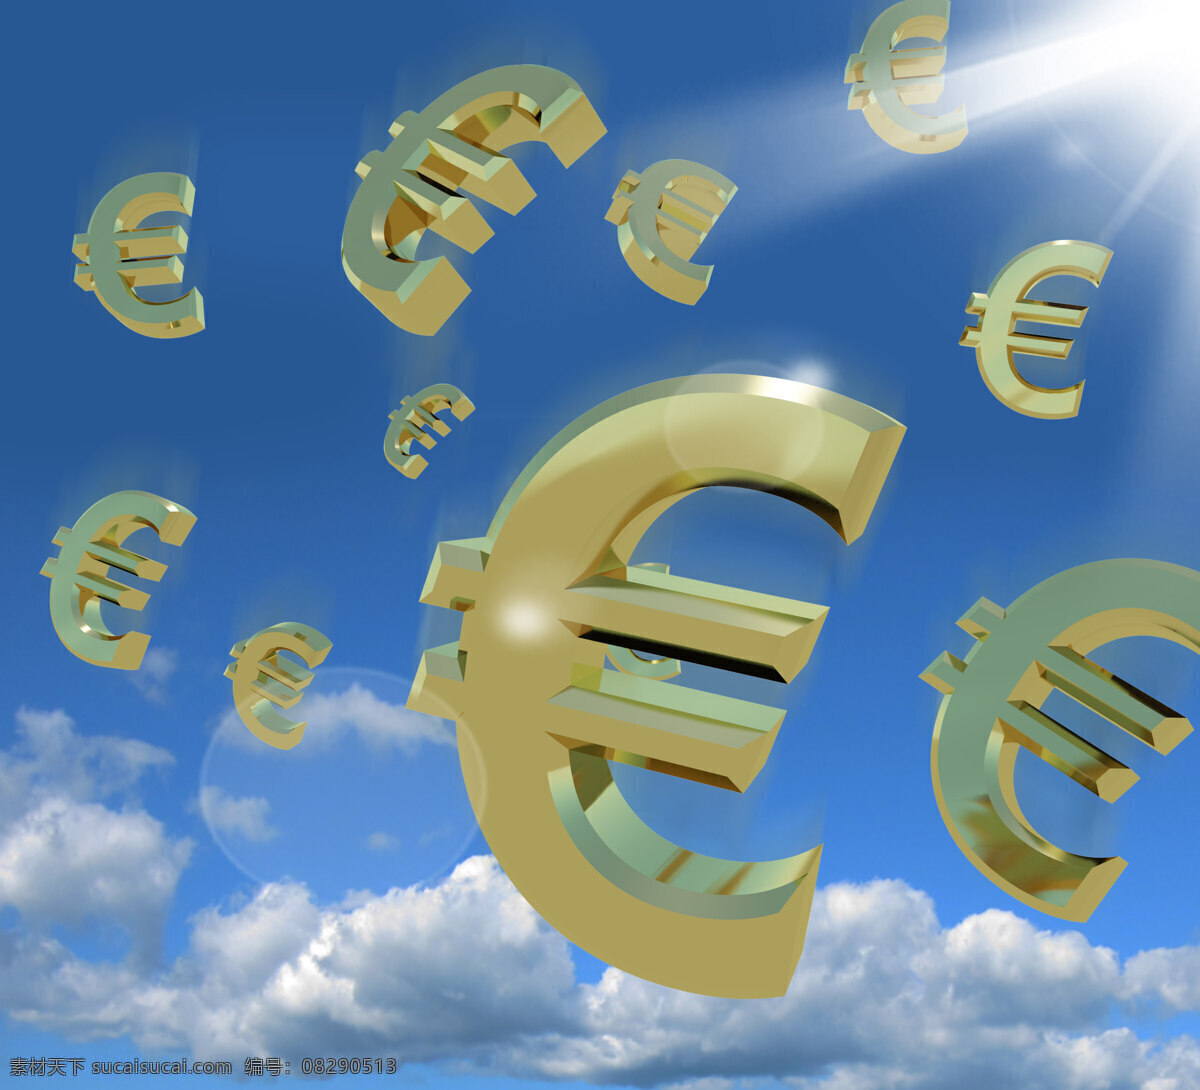 欧元 符号 天上 掉 下来 作为 财富 象征 商务金融